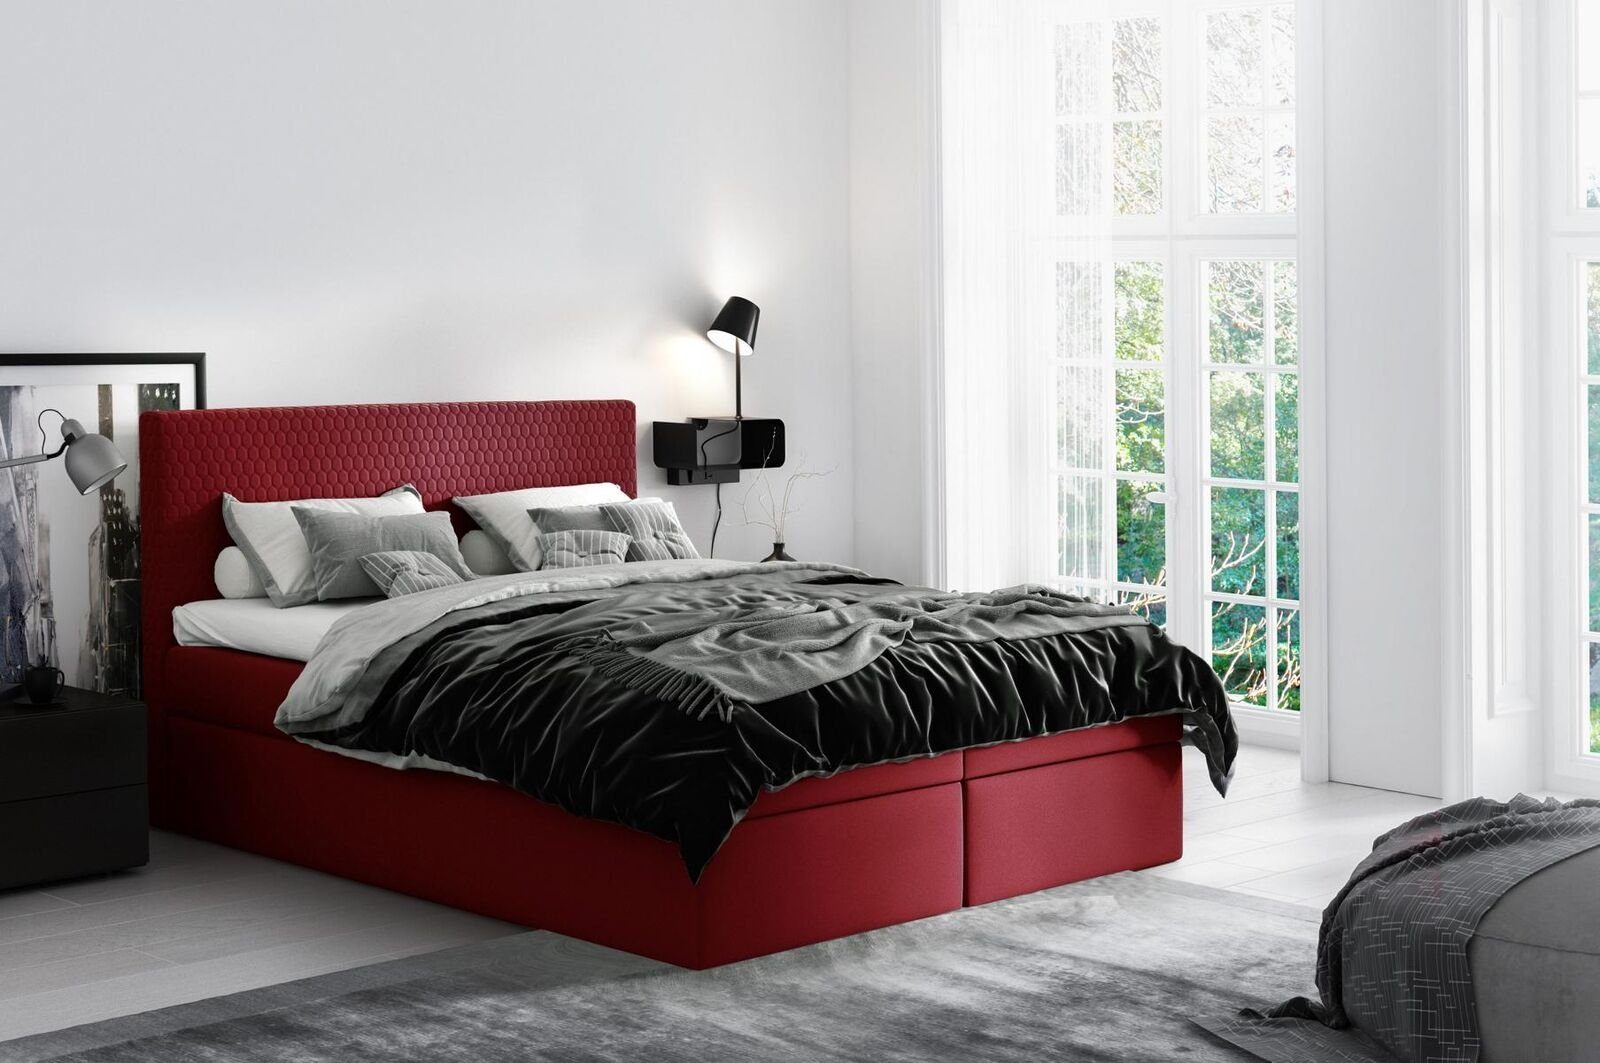 JVmoebel Bett, Boxspringbett Textil Design Doppel Hotel Modern Bett Schlafzimmer Rot | Bettgestelle